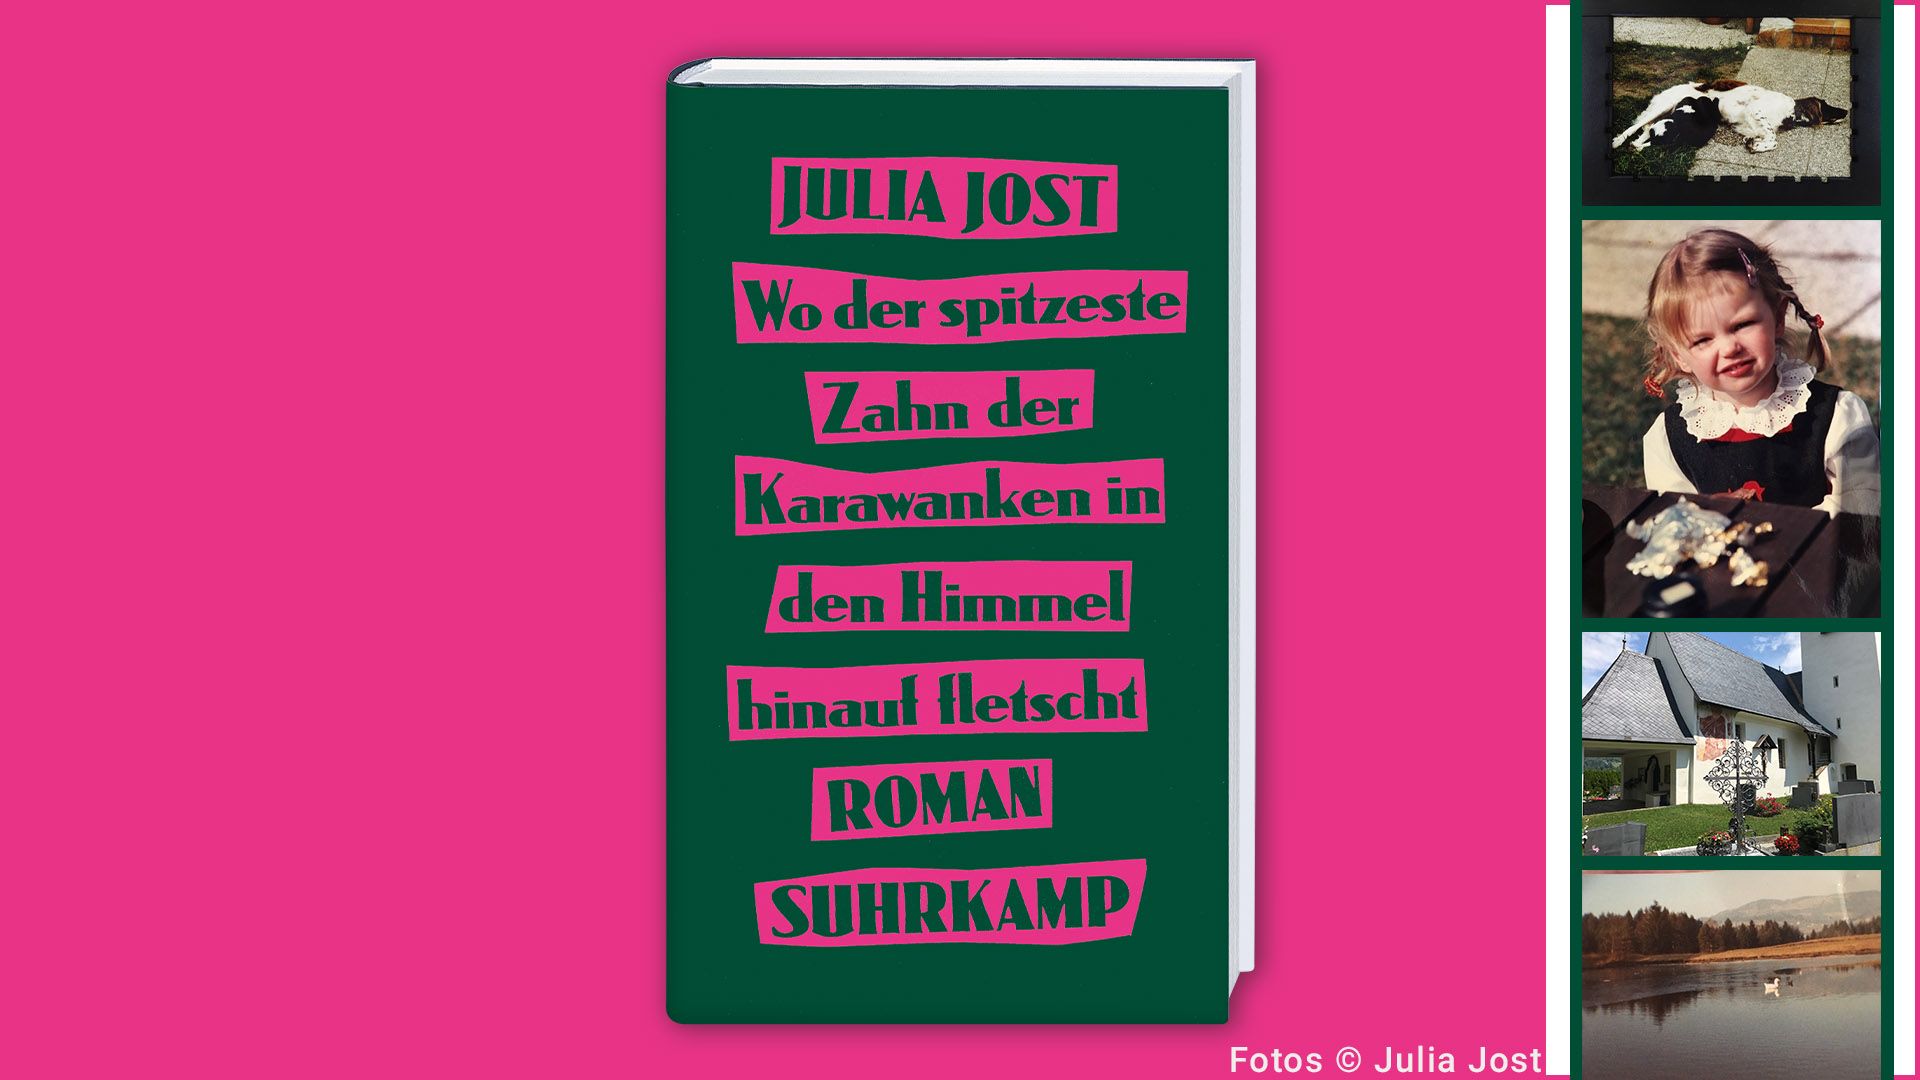 Beitrag zu Julia Jost und der <em>spitzeste Zahn der Karawanken</em> – Hintergründe zum Roman